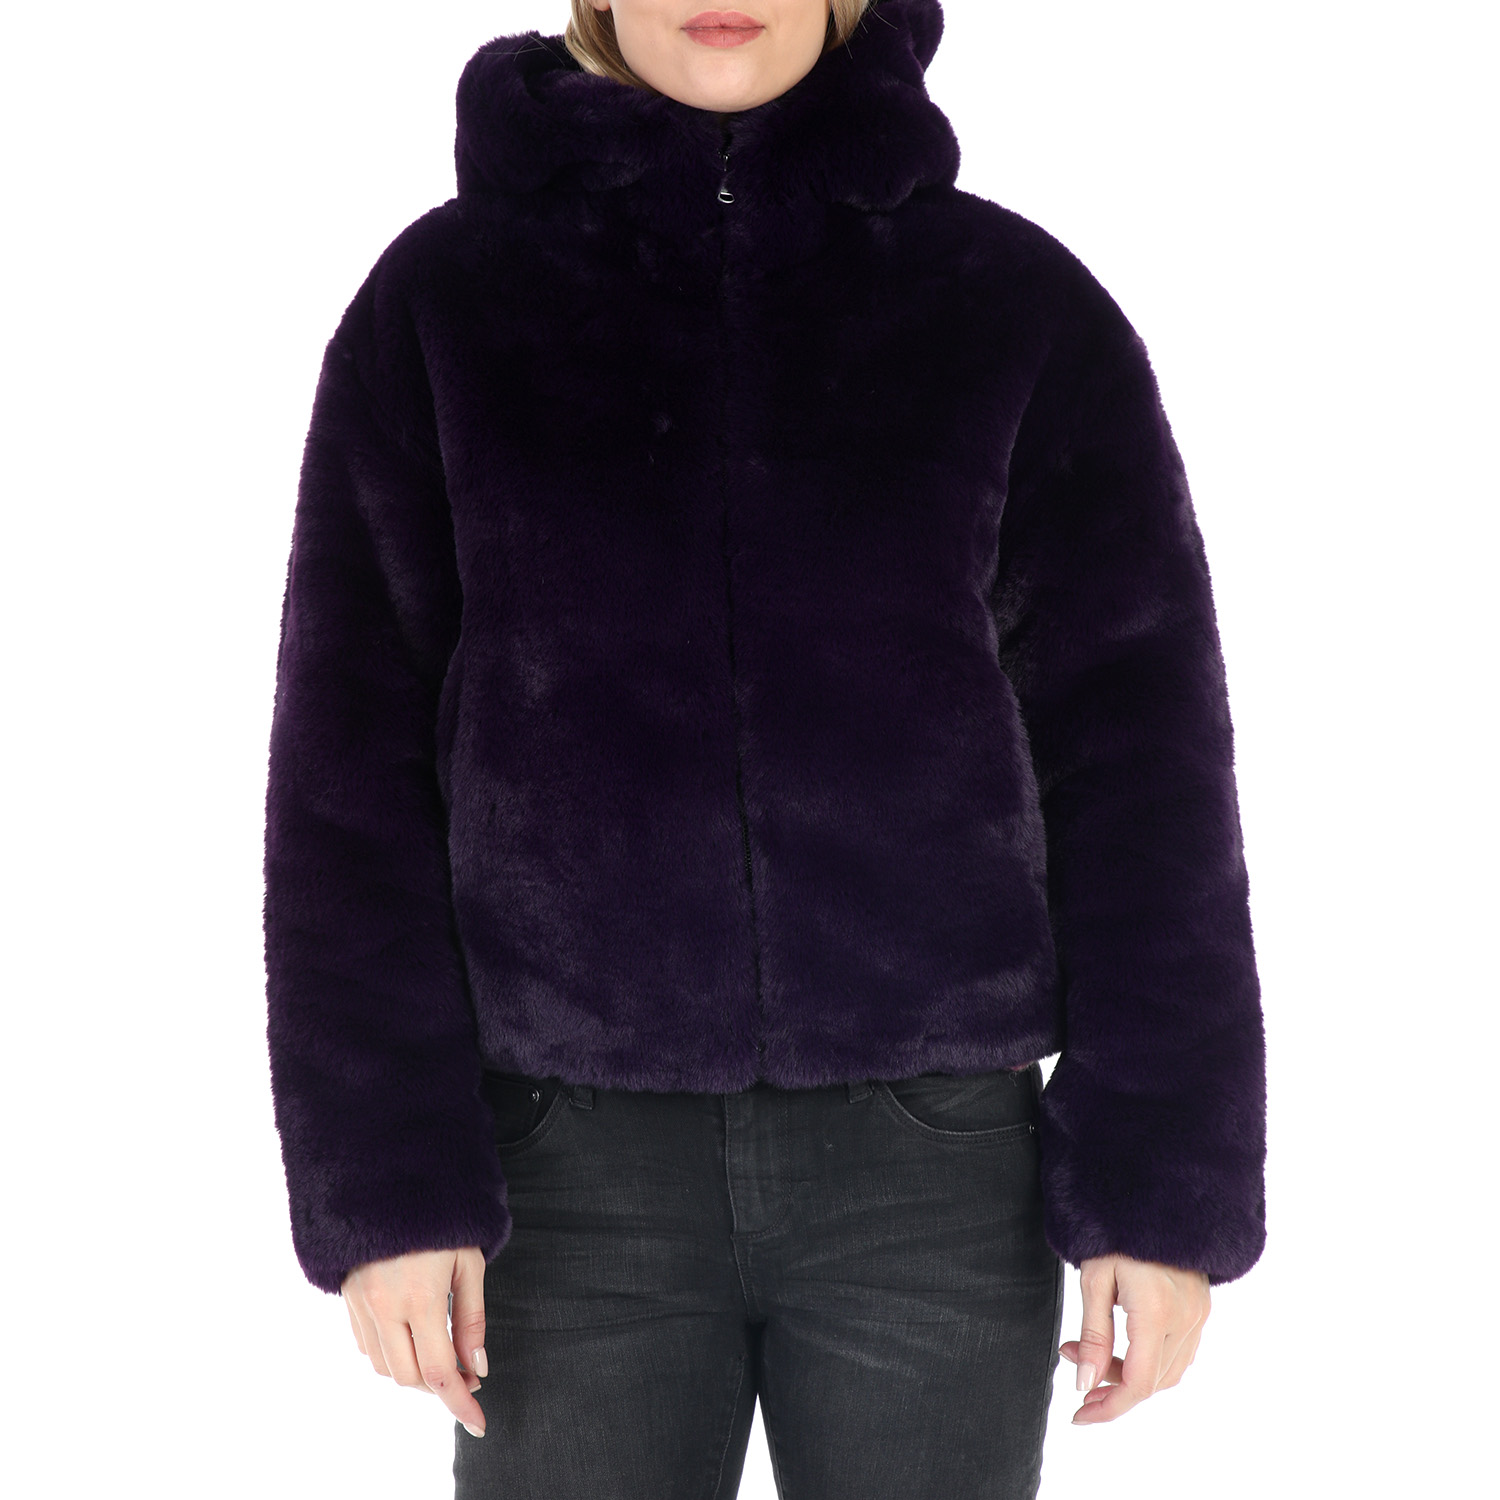 Γυναικεία/Ρούχα/Πανωφόρια/Τζάκετς TAVUS - Γυναικείο γούνινο jacket TAVUS μοβ